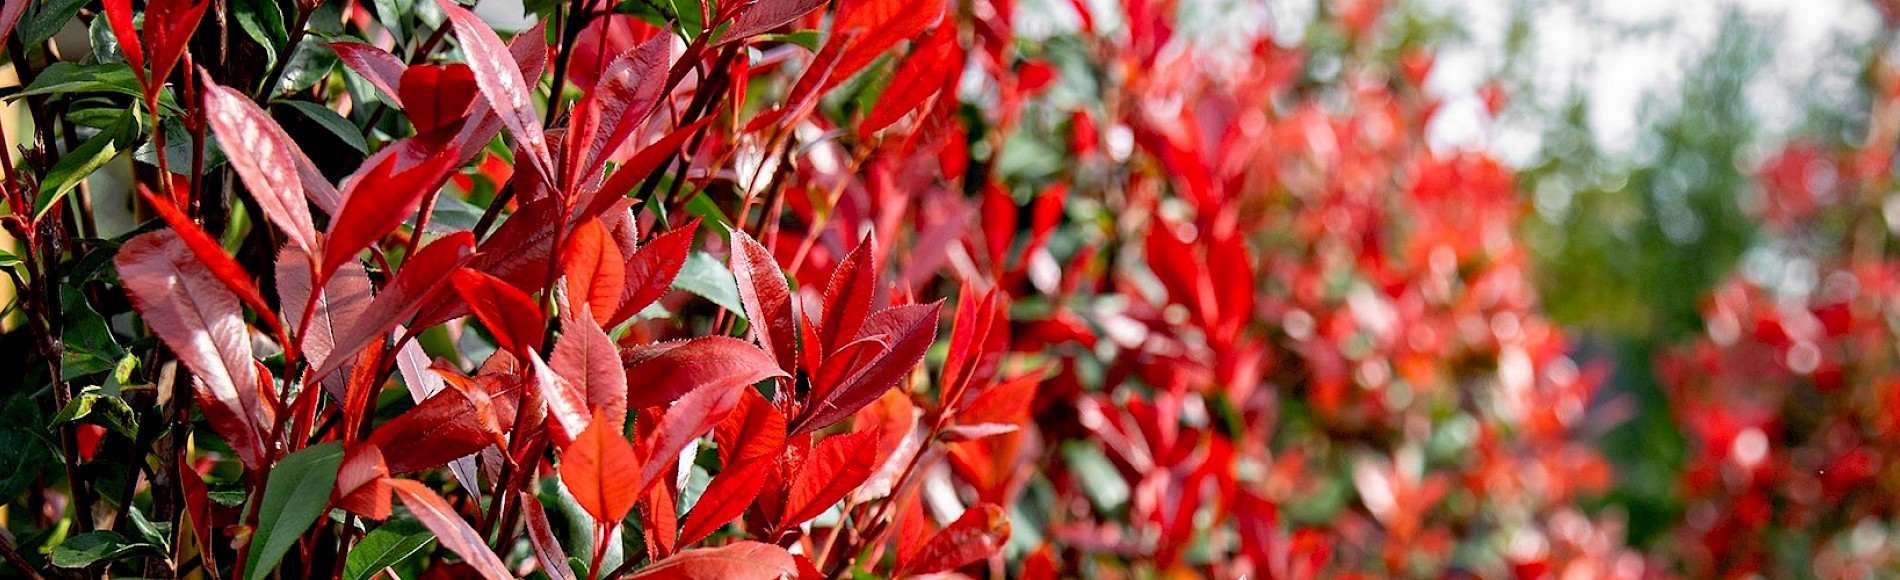 Rote Blätter der Glanzmispel in Nahaufnahme